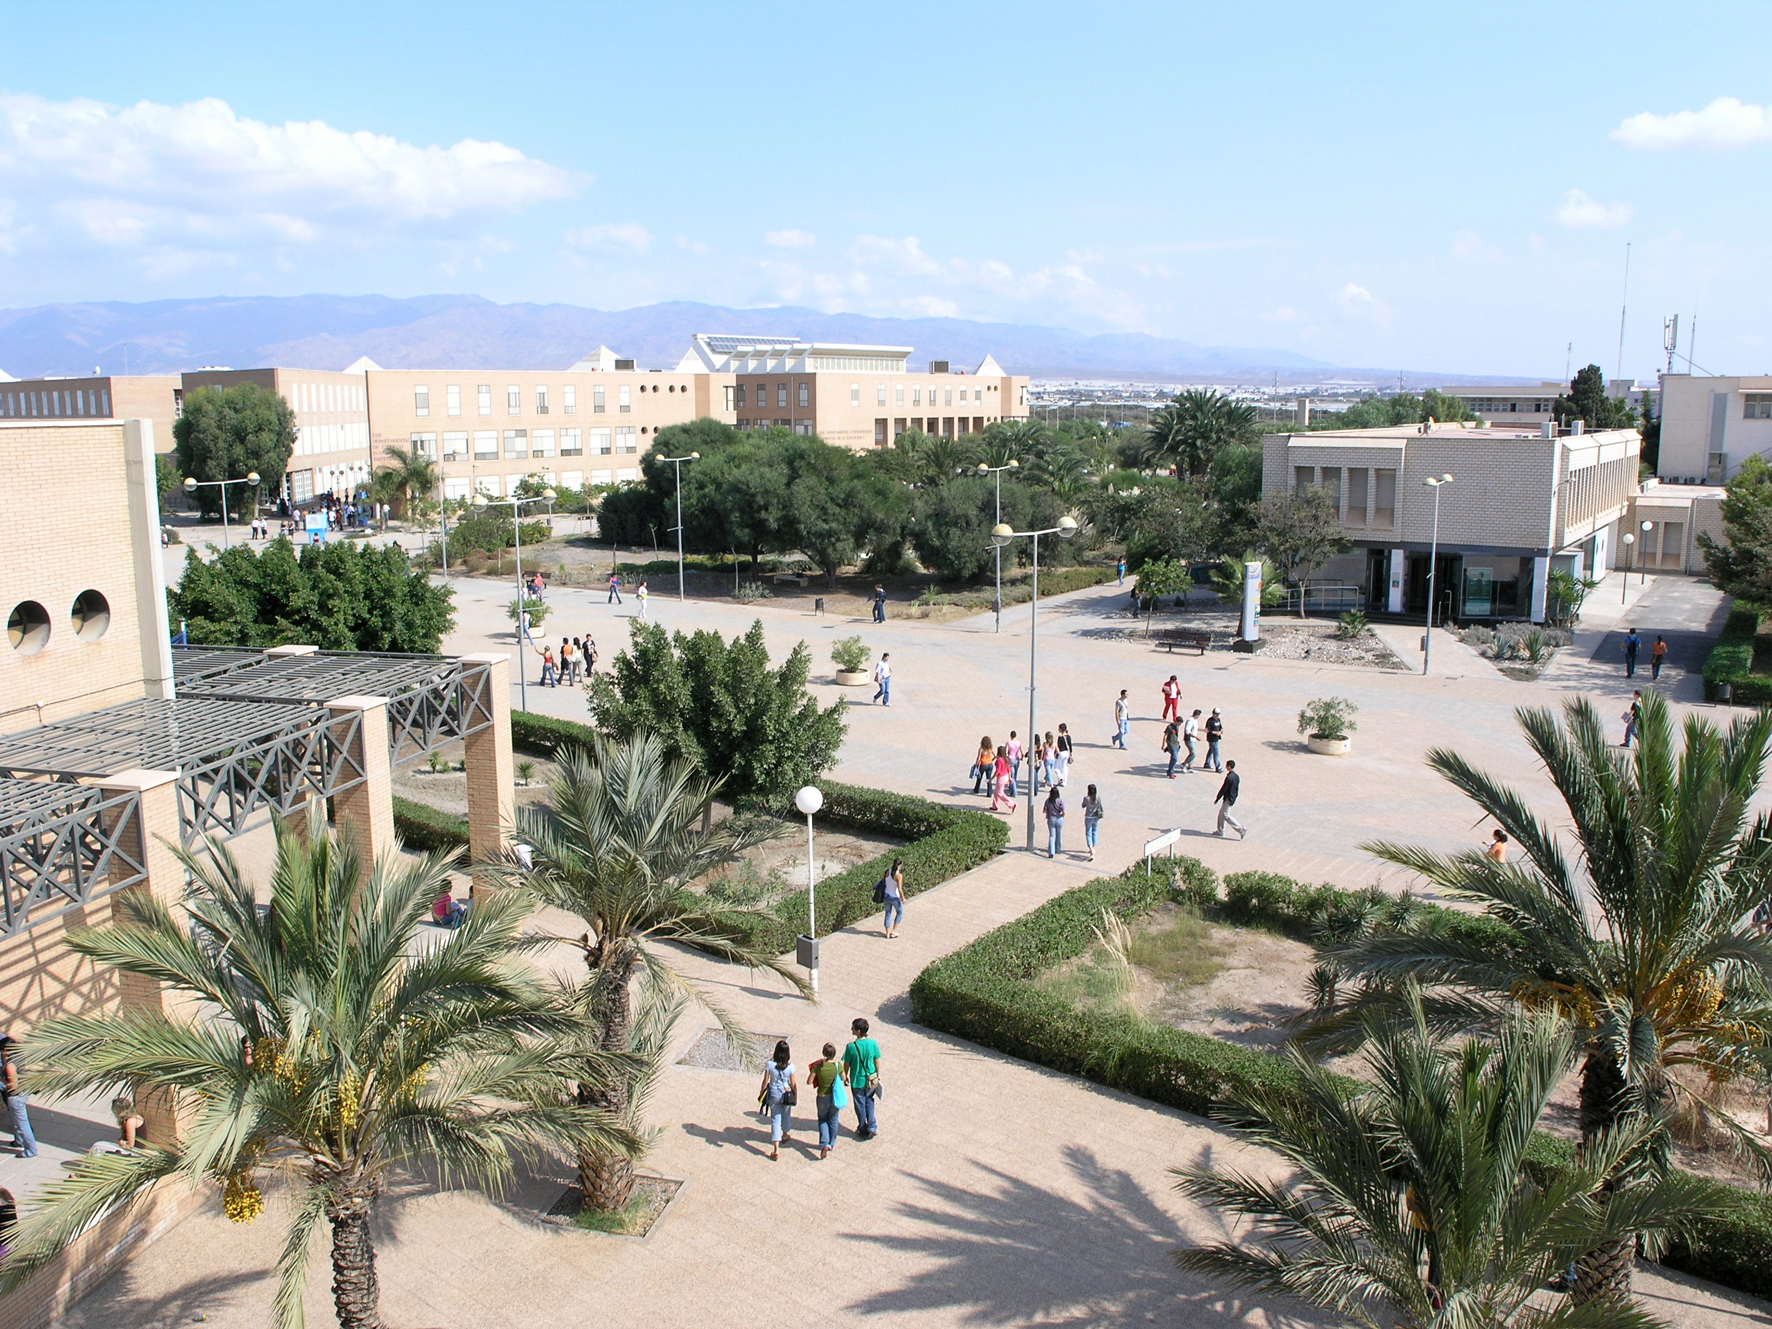 Trường Almeria cung cấp 26 khóa học Đại học và hơn 50 khóa học Thạc sĩ